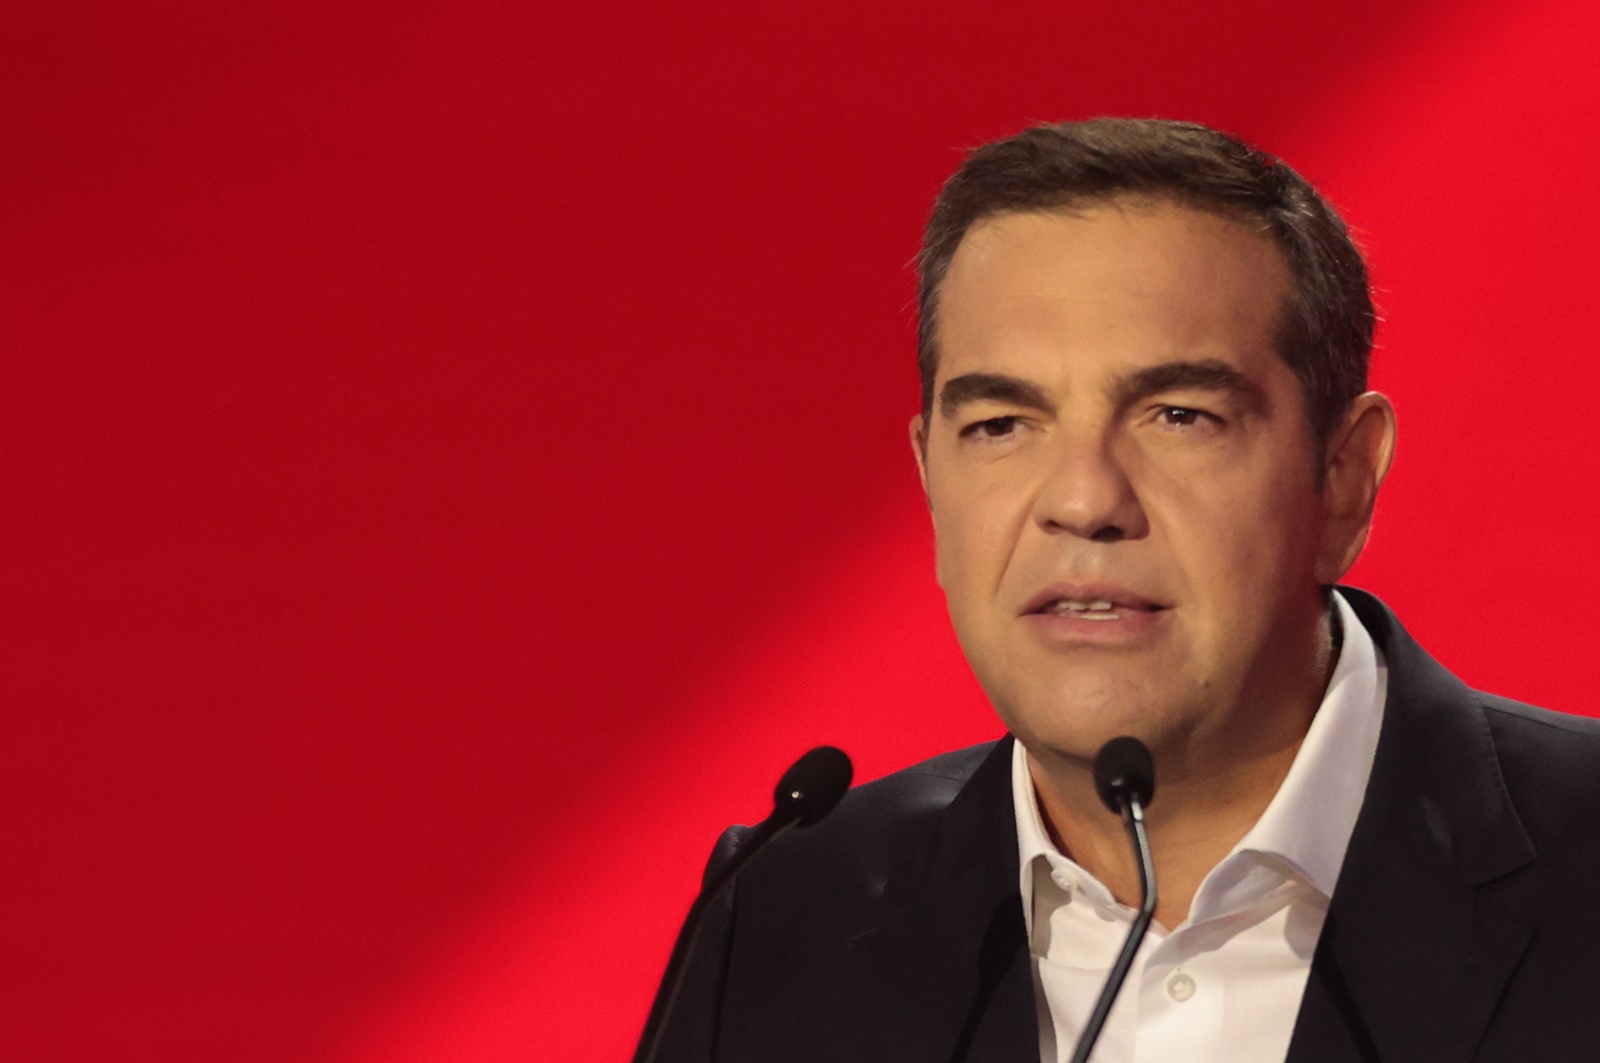 Τσίπρας ANT1 Live: Η συνέντευξη του προέδρου του ΣΥΡΙΖΑ στο “Καλημέρα Ελλάδα”